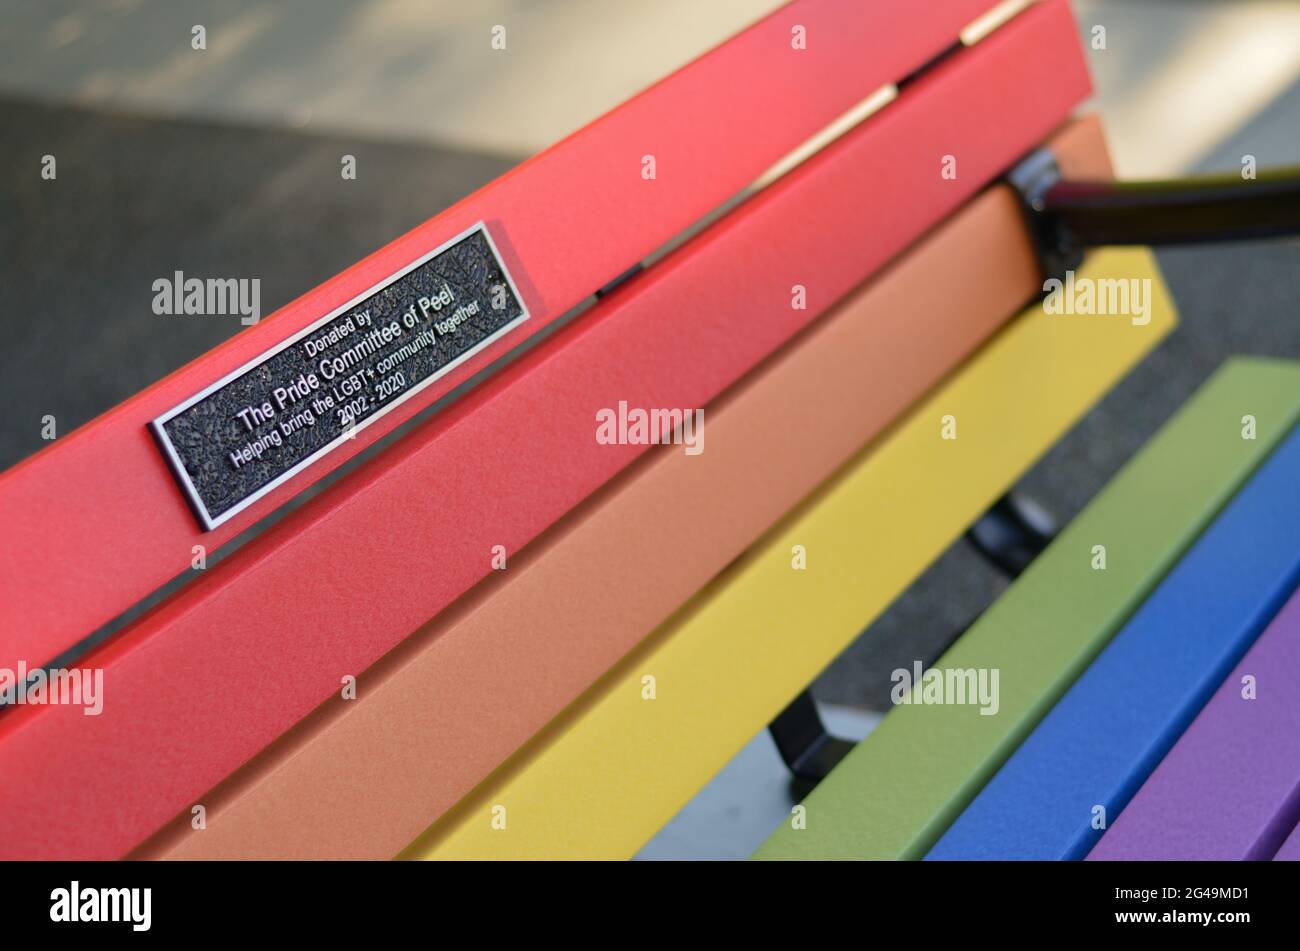 Un banc peint dans les couleurs du drapeau de fierté arc-en-ciel près du collage Sheridan Mississauga, Ontario, Canada pour célébrer le mois de fierté pour 2SLGBTQ+ (deux Spirit,L Banque D'Images